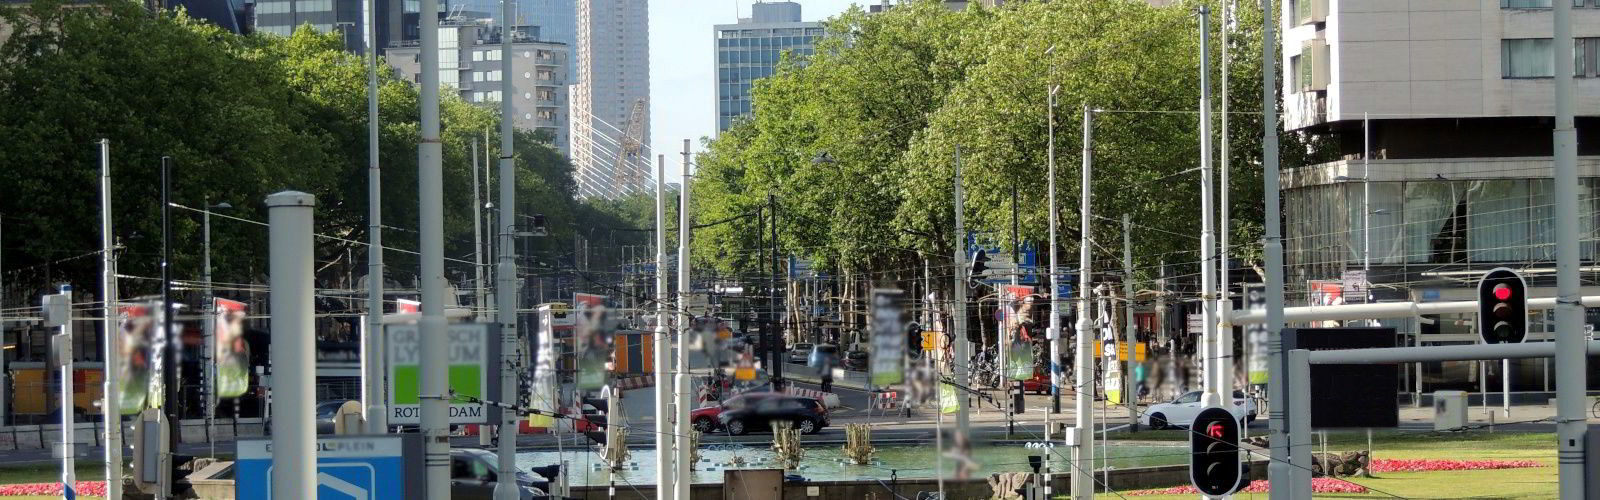 Hofplein Rotterdam zicht naar het zuiden.